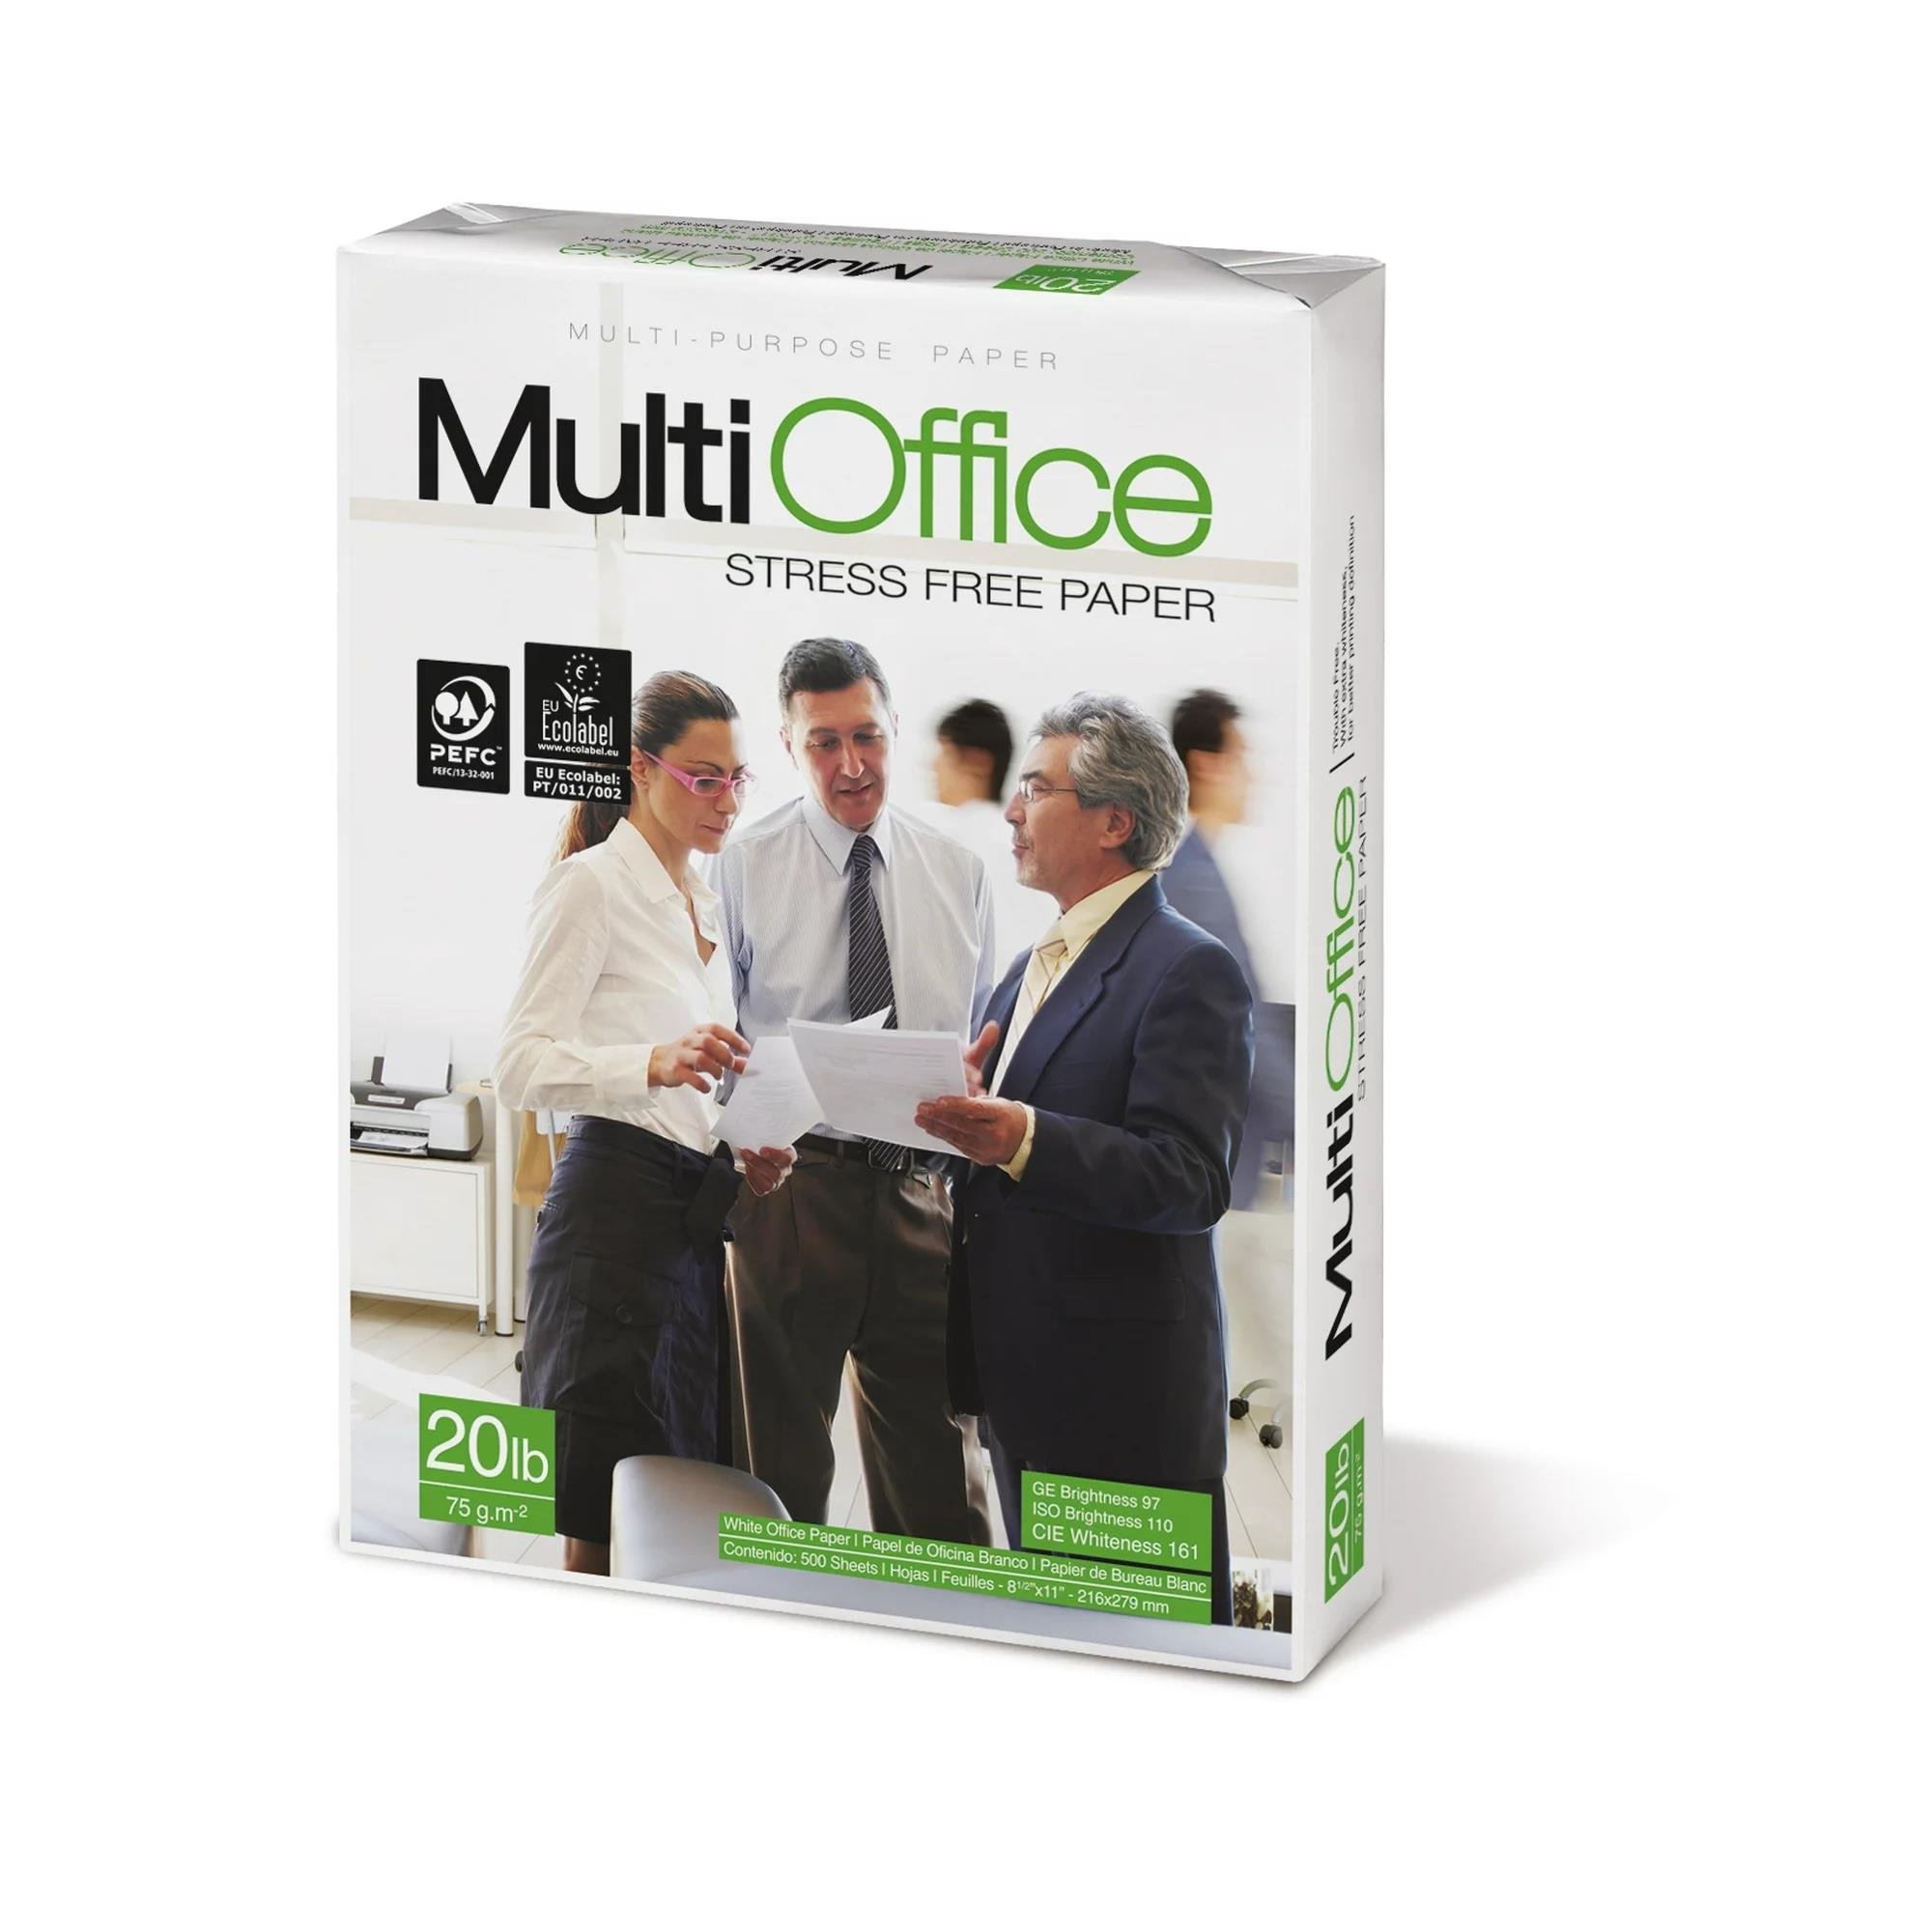 Business Source Multi-Purpose Paper 8 1/2x11 - White